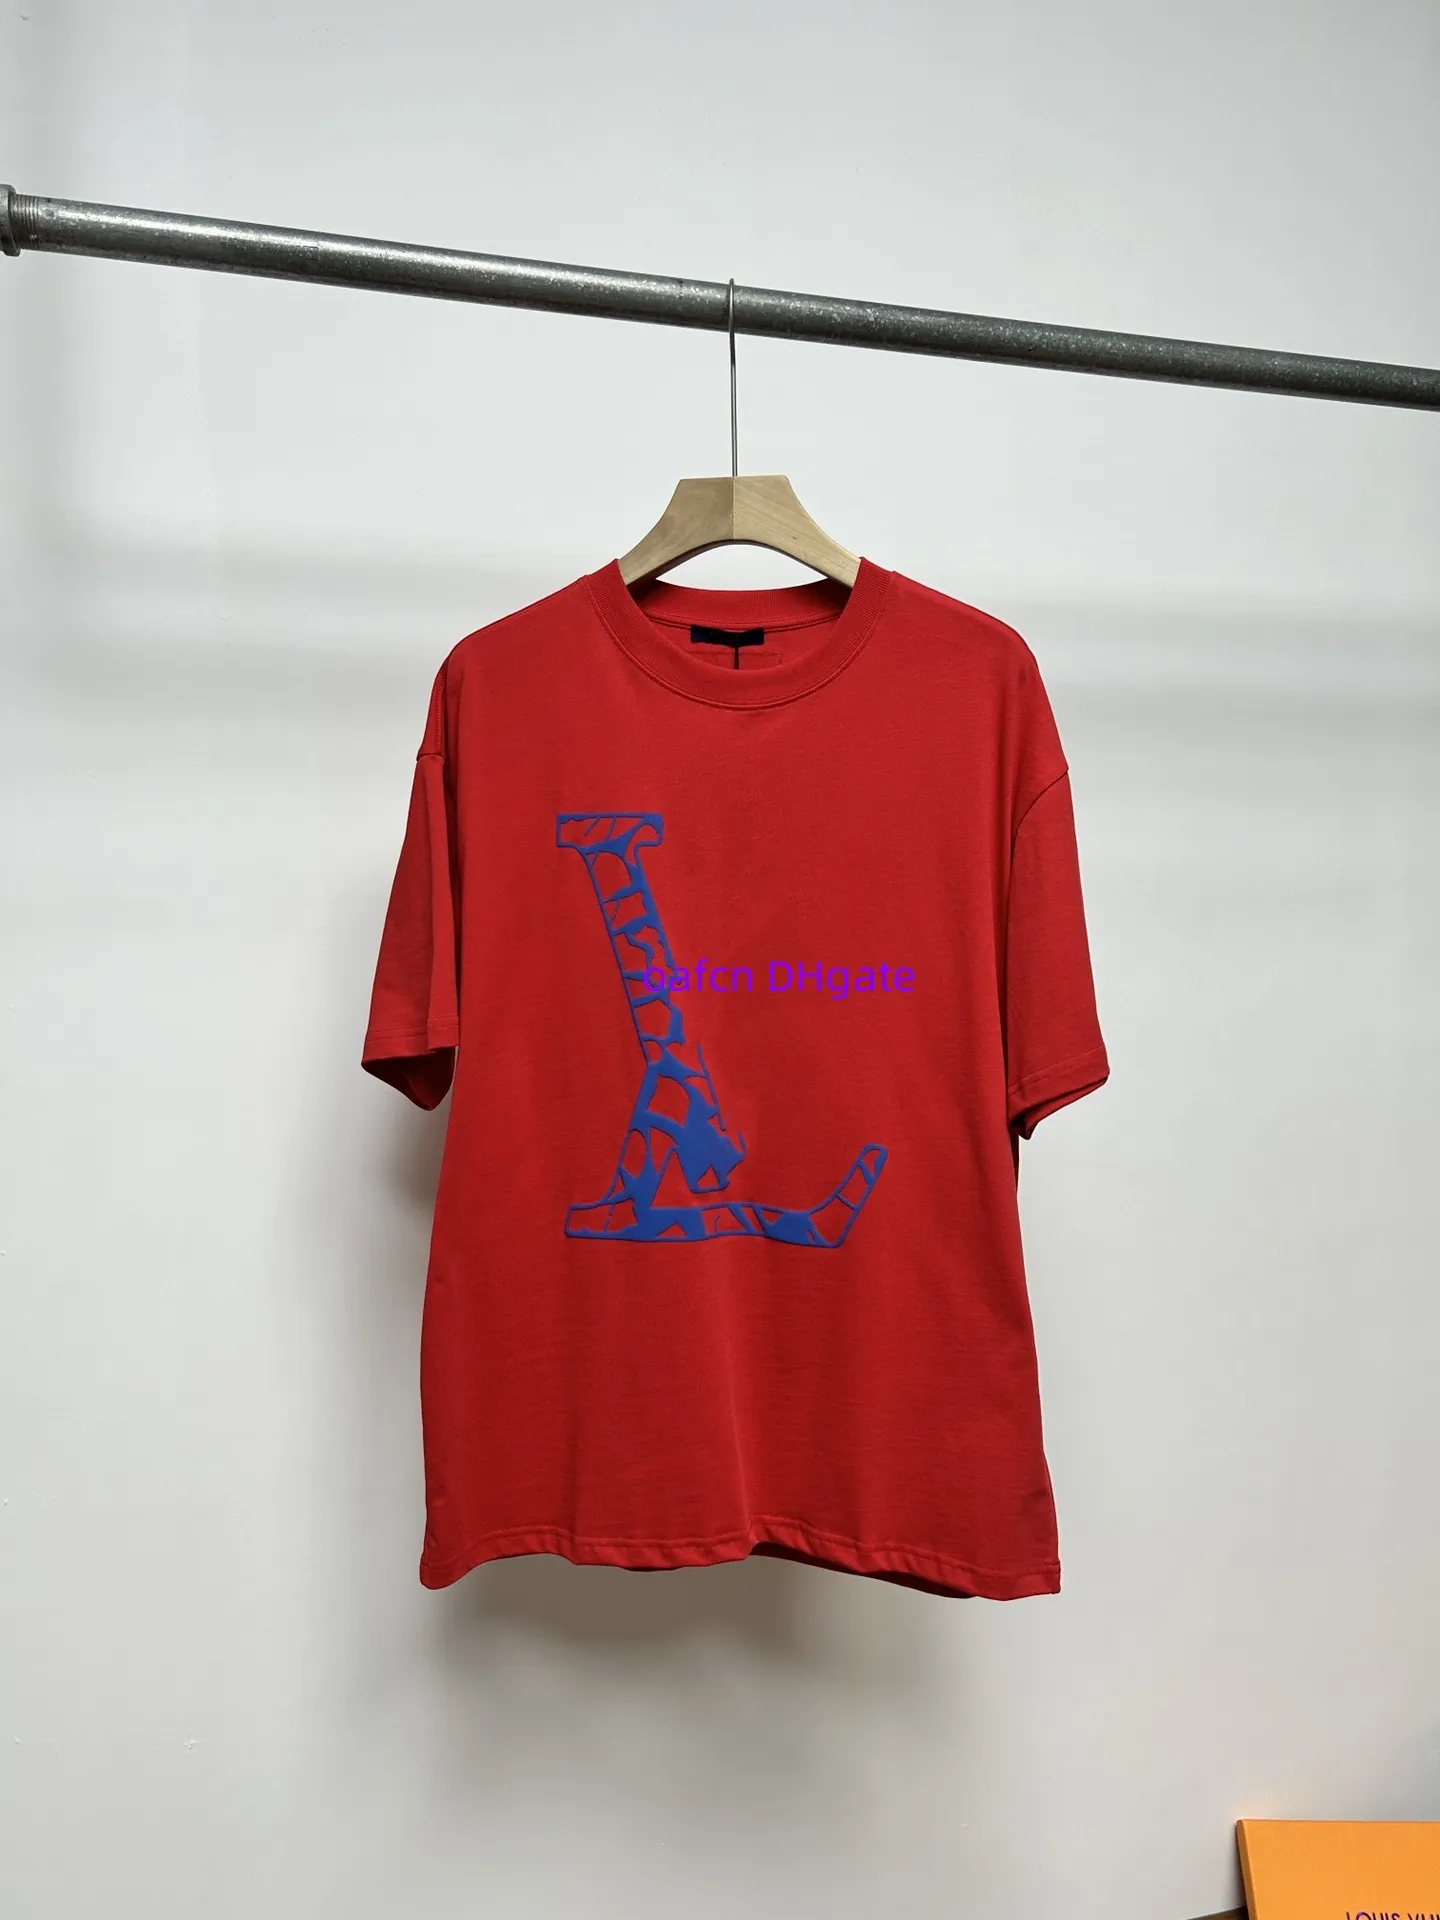 남자 디자이너 티셔츠, 여자 셔츠, 글자 인쇄 티셔츠, 짧은 슬리브 여름 셔츠, 느슨한 티셔츠, 3 차원 인쇄 로고, 둥근 목, 짧은 슬리브 셔츠, 682